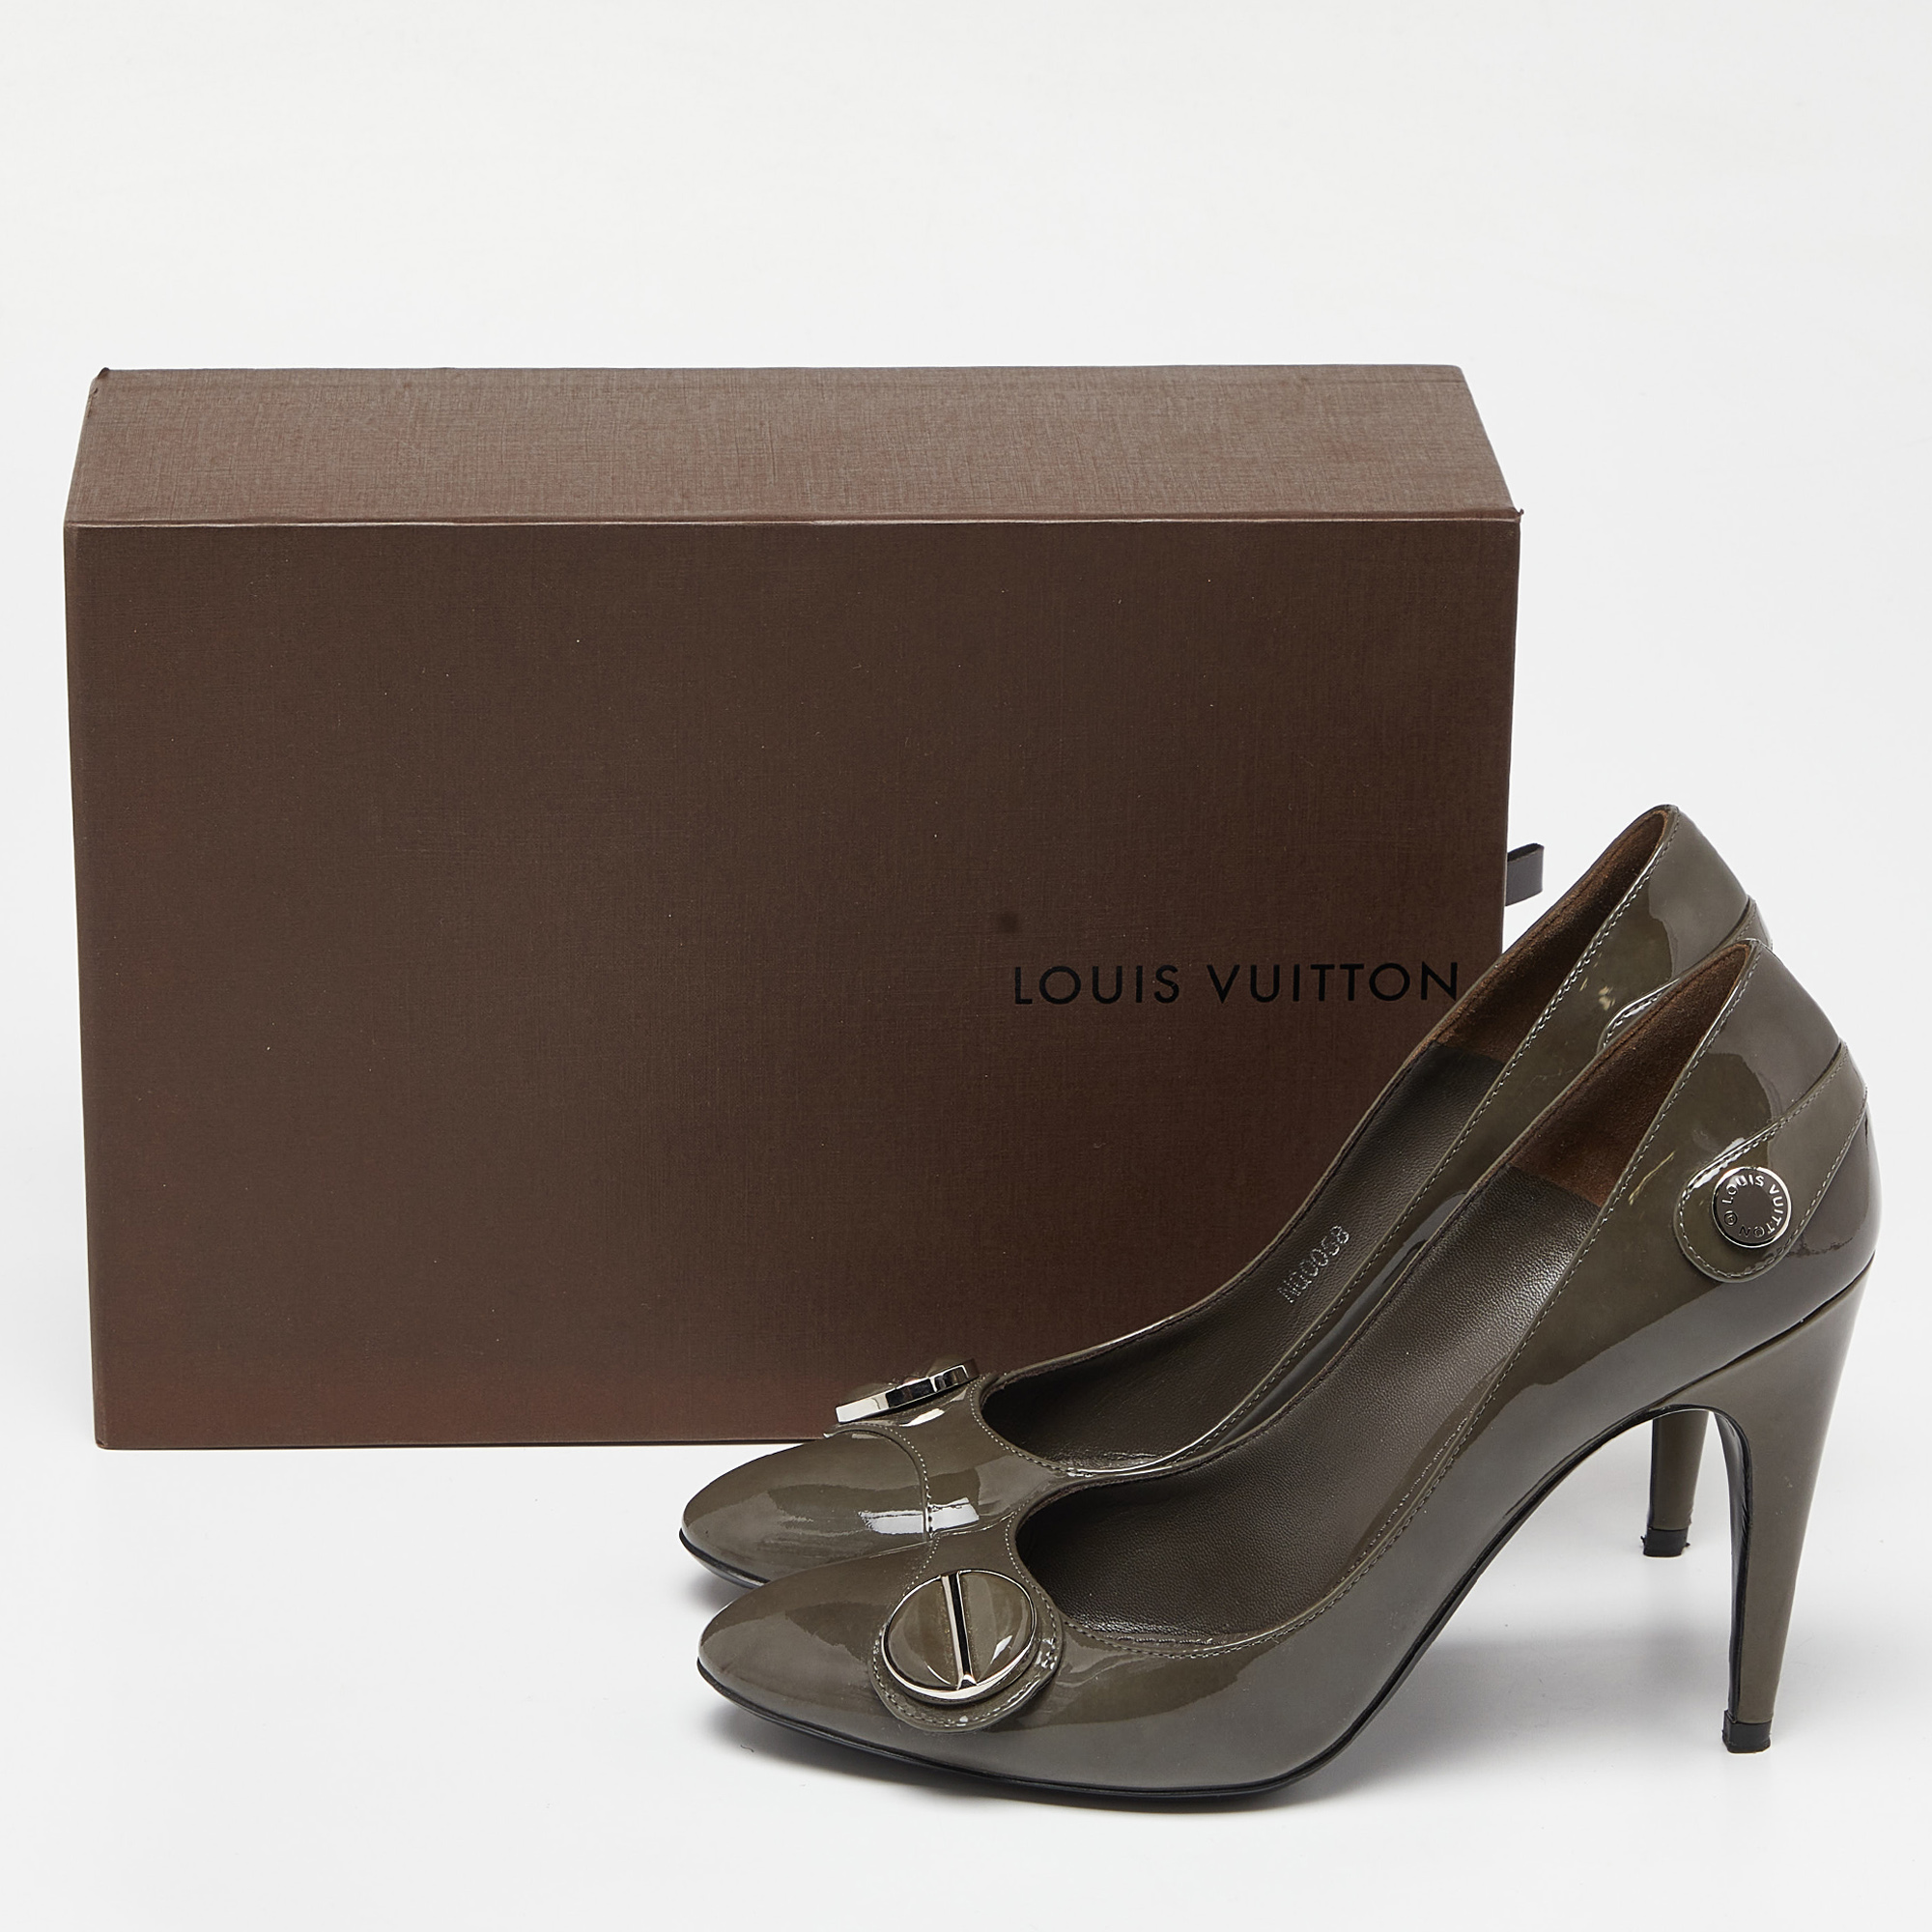 Louis Vuitton Grey Patent Leather Pumps Size 38